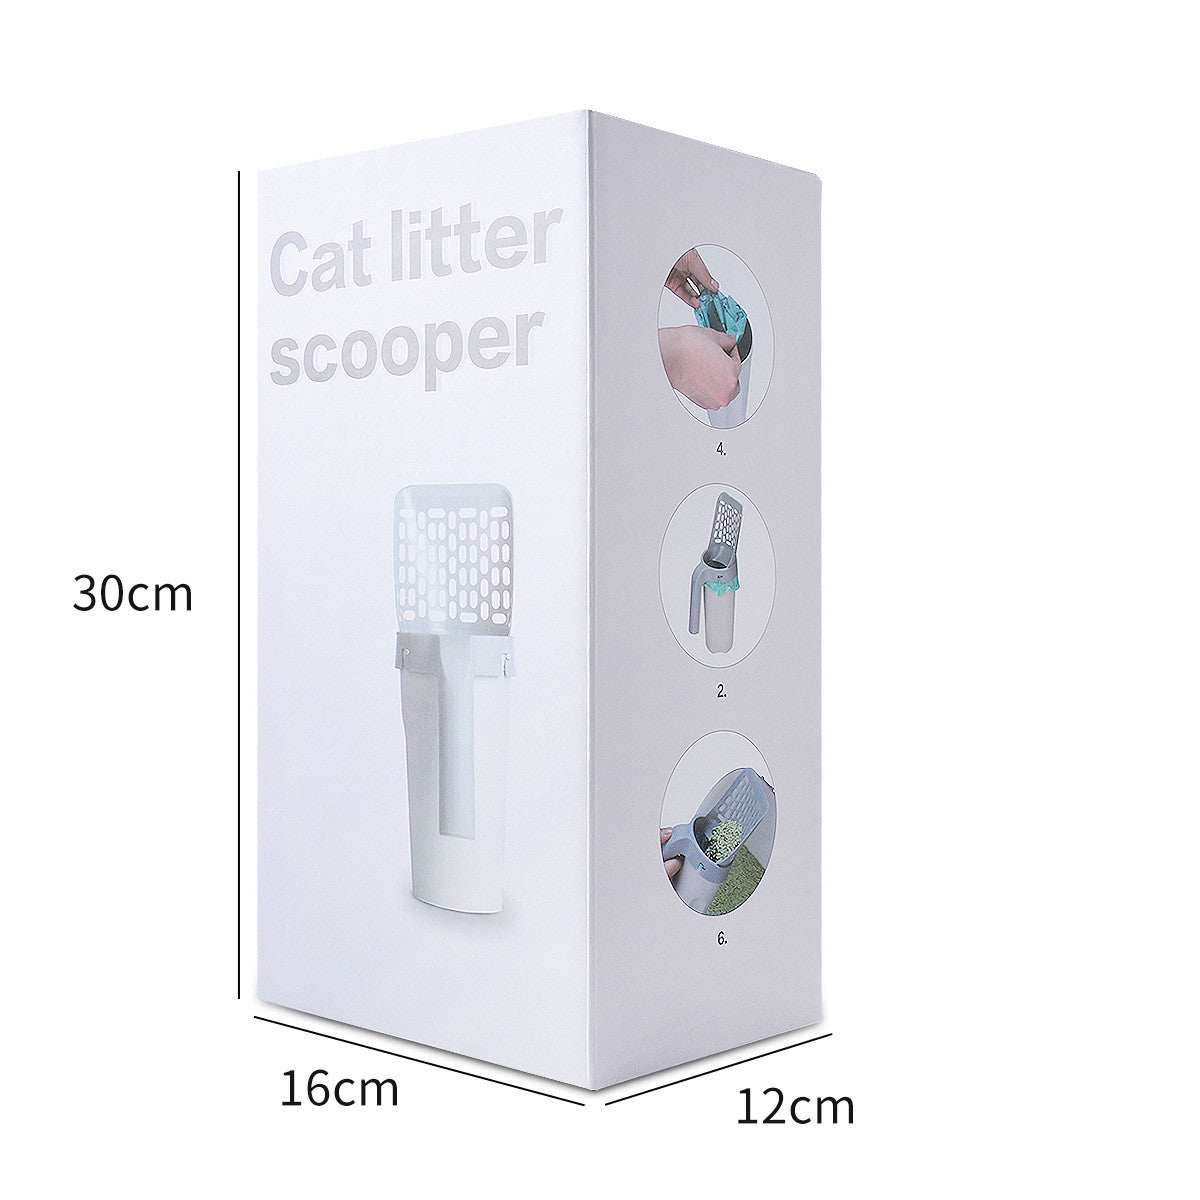 Plastic Cat Litter Scoop